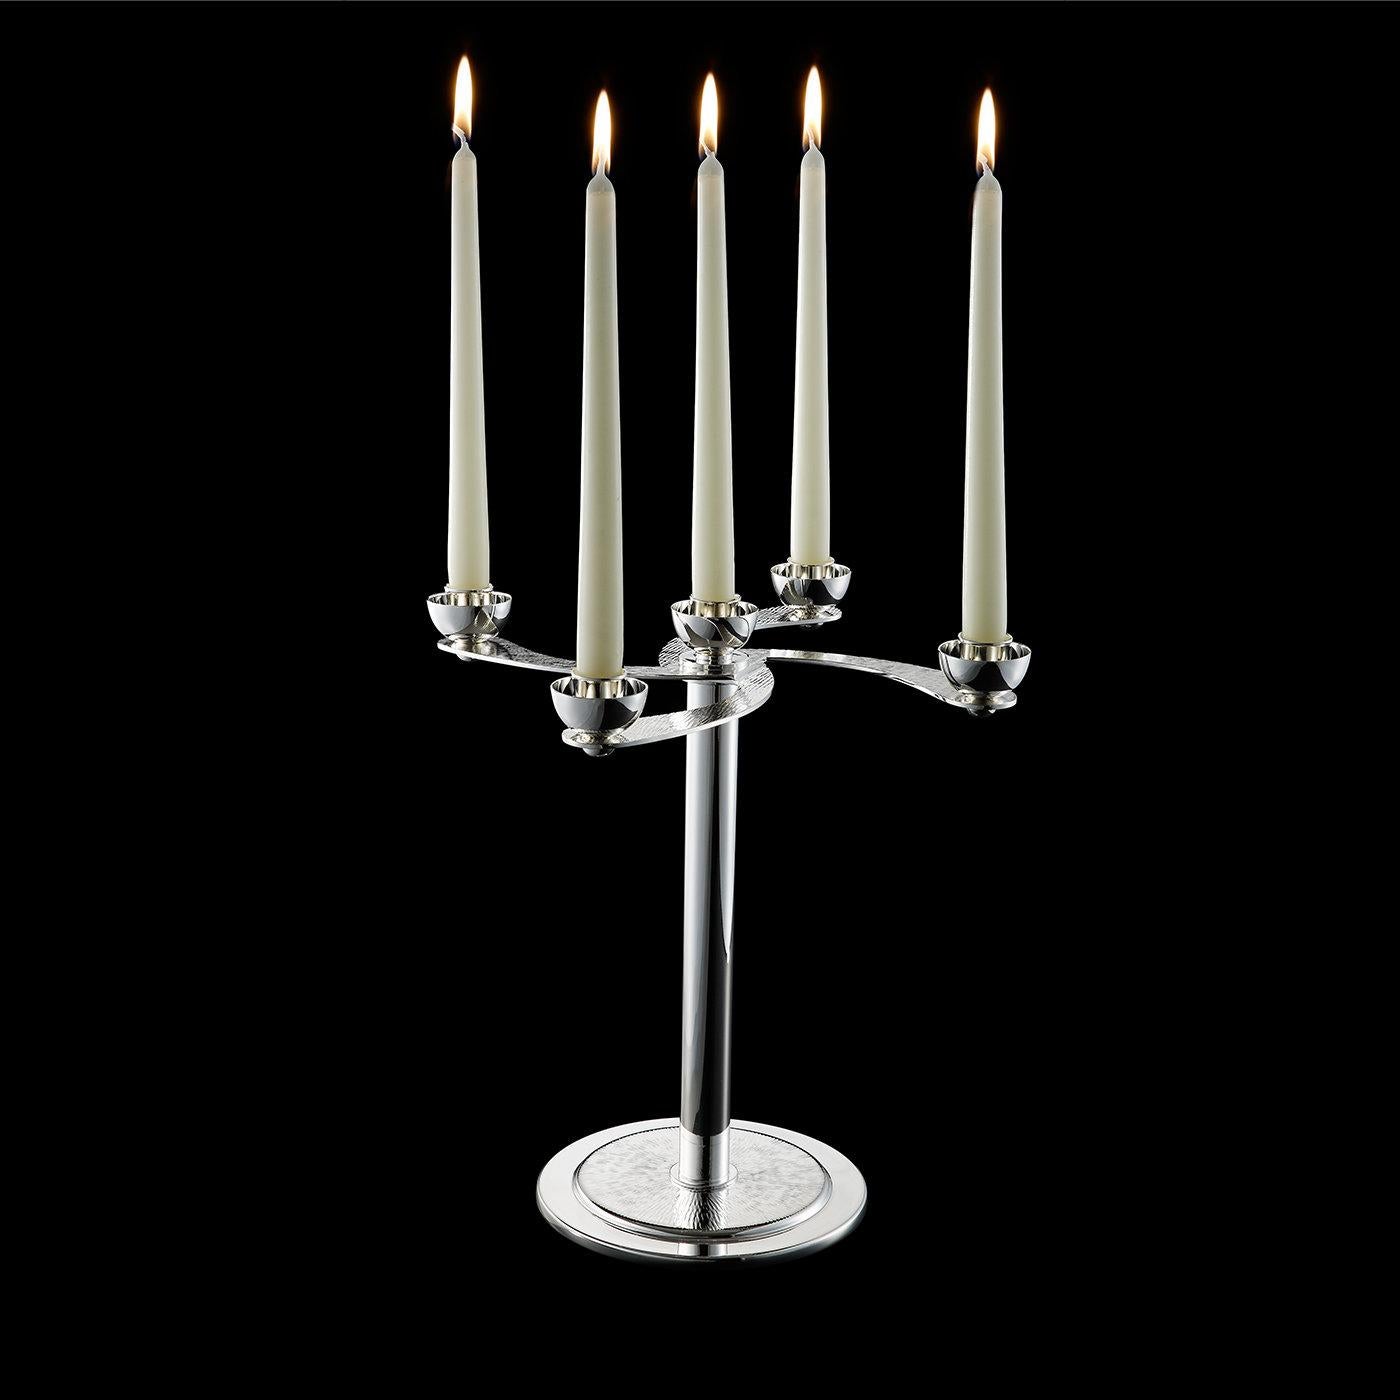 Ce magnifique candélabre contient cinq bougies et est élégamment construit en alliage argenté. Le candélabre peut être séparé en deux parties, la partie supérieure accueillant les bougies et la base devenant un vase. Les bras du candélabre sont